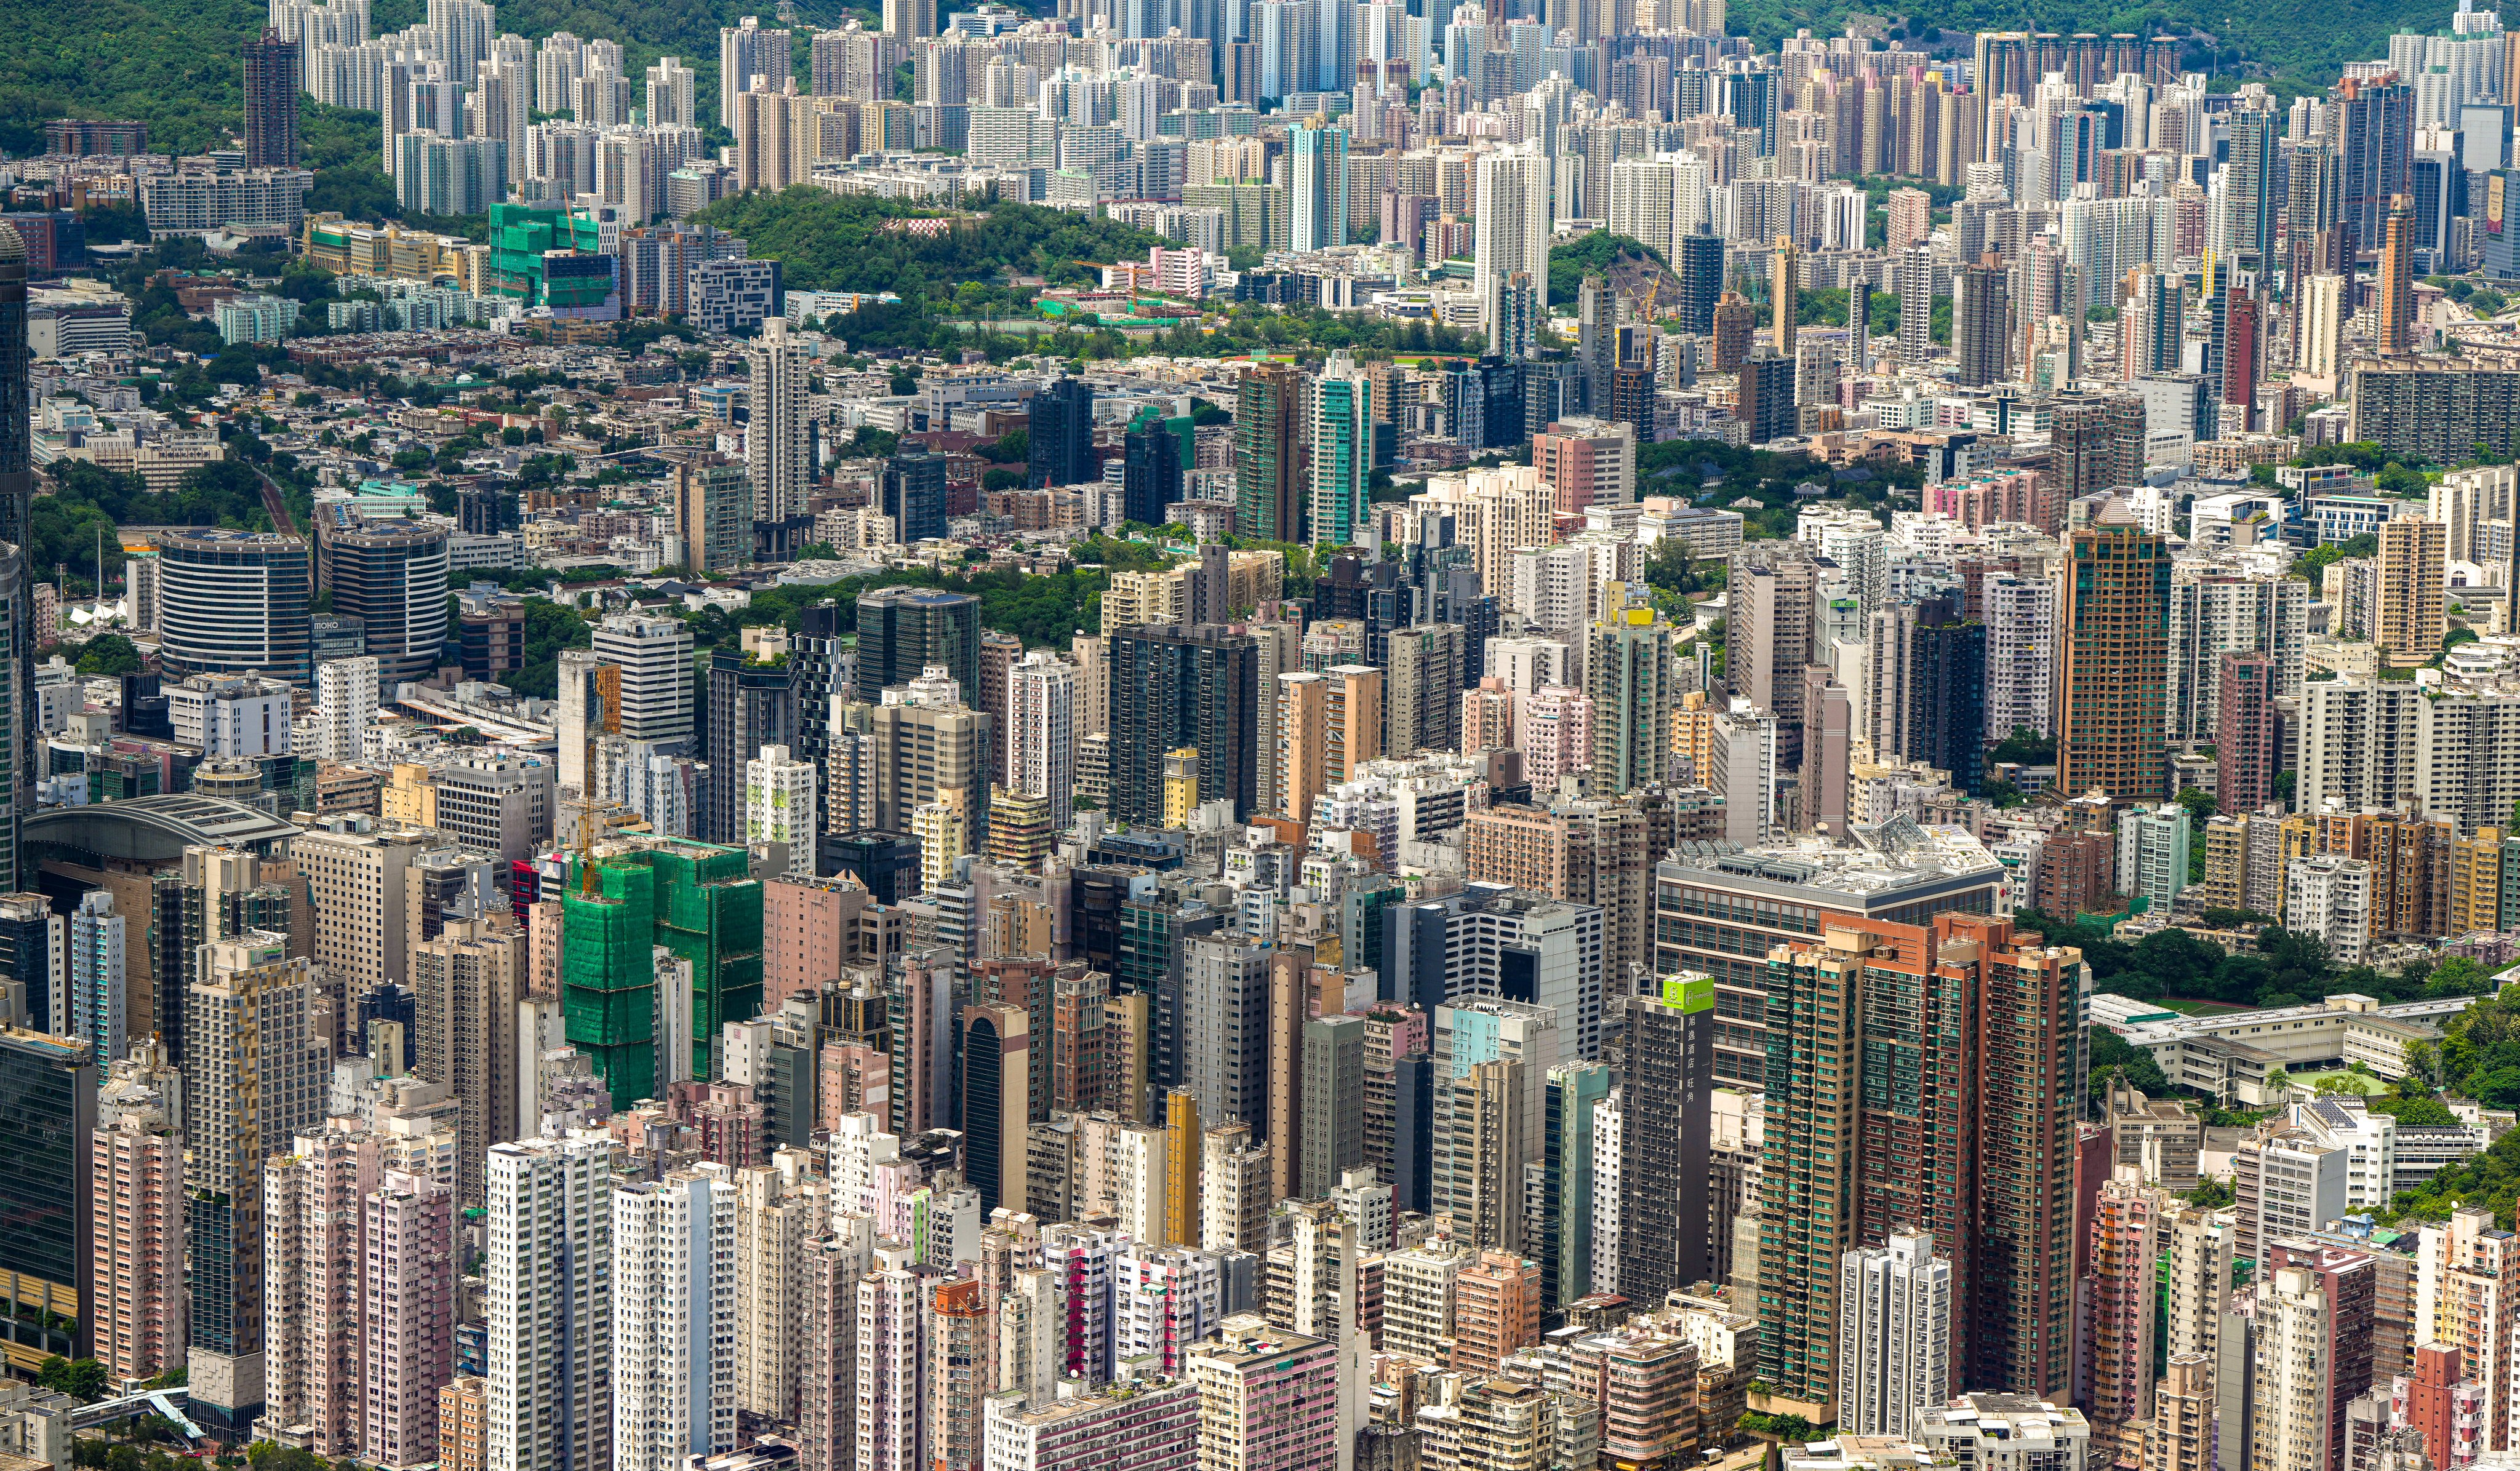 Hong Kong authorities are battling to increase the supply of public flats. Photo: Sam Tsang